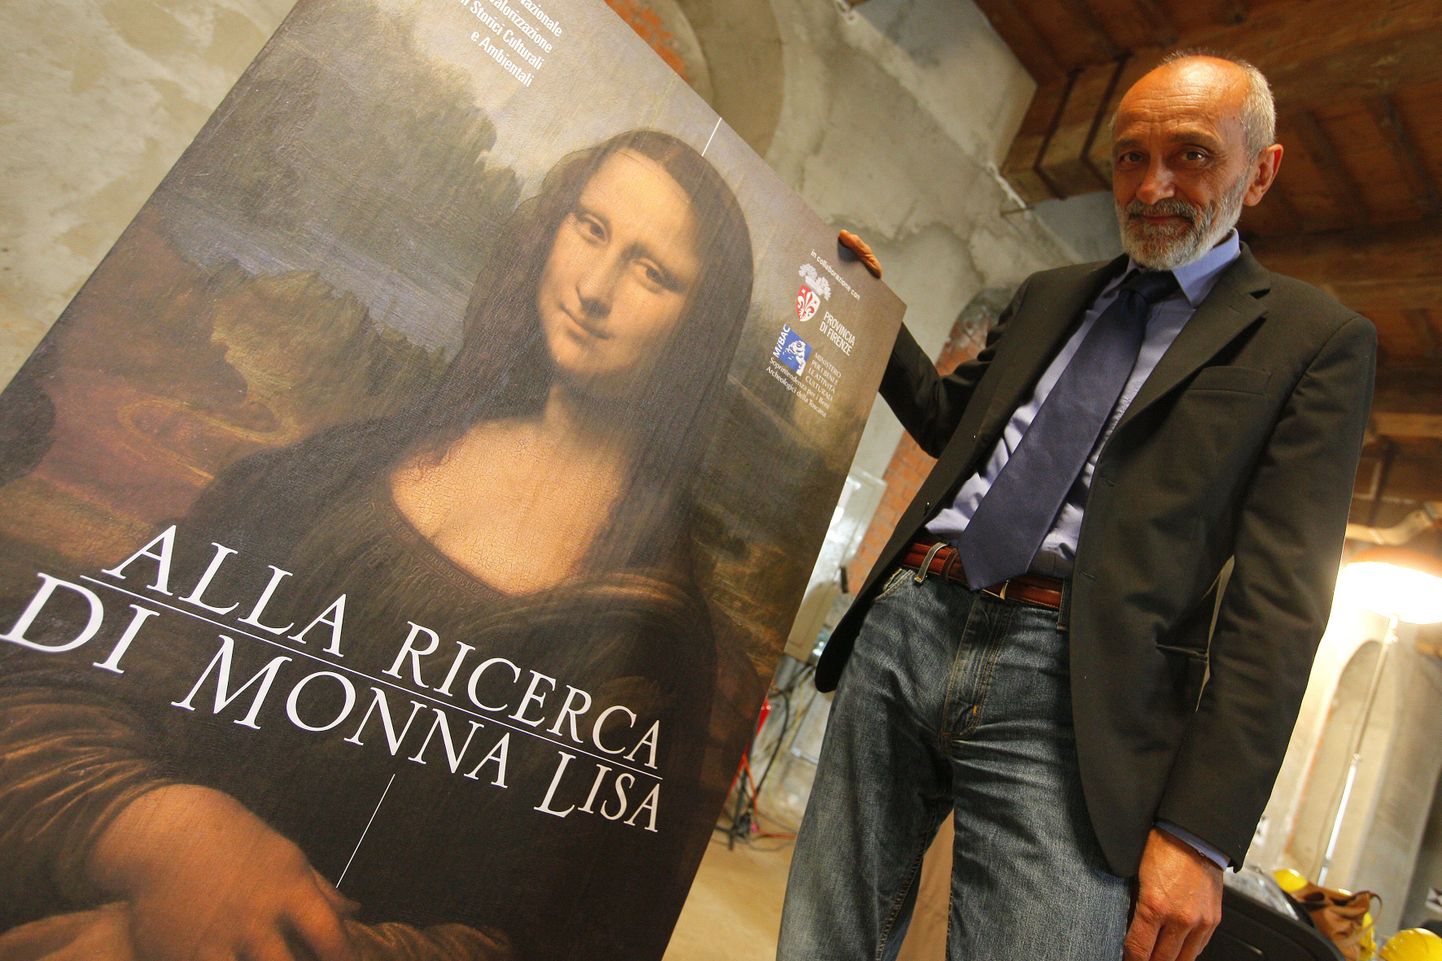 Itaalia kultuuriväärtuste ameti juht Silvano Vinceti näitamas väljakaevamisi reklaamivat plakatit